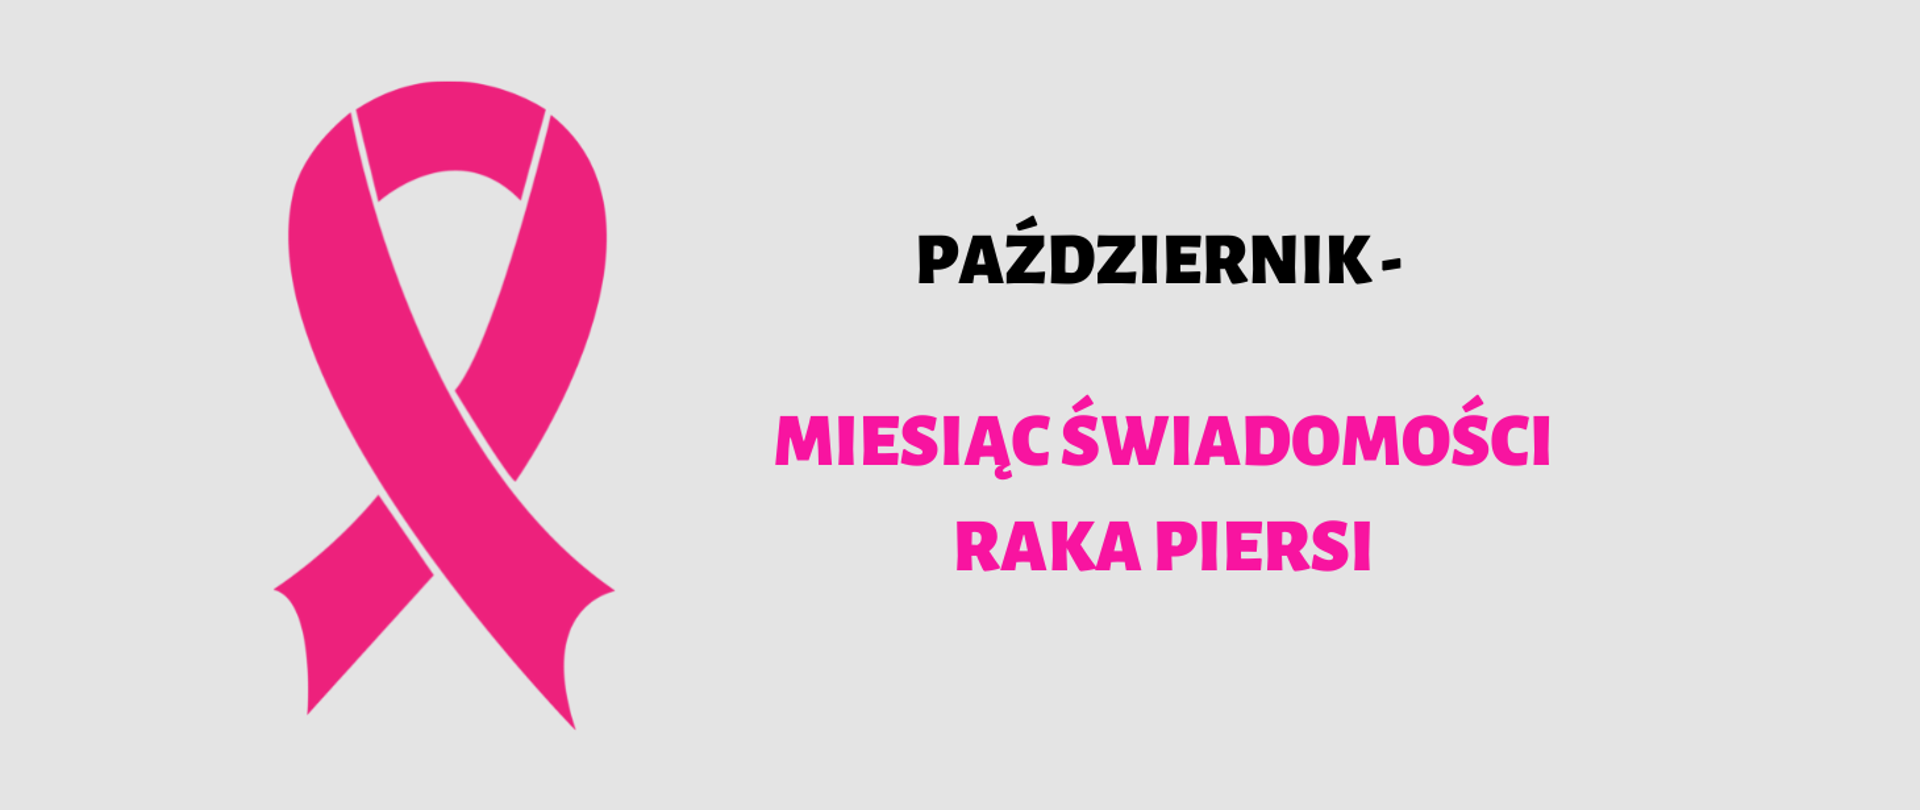 Różowa wstążeczka na szarym tle. Październik - miesiąc świadomości raka piersi.